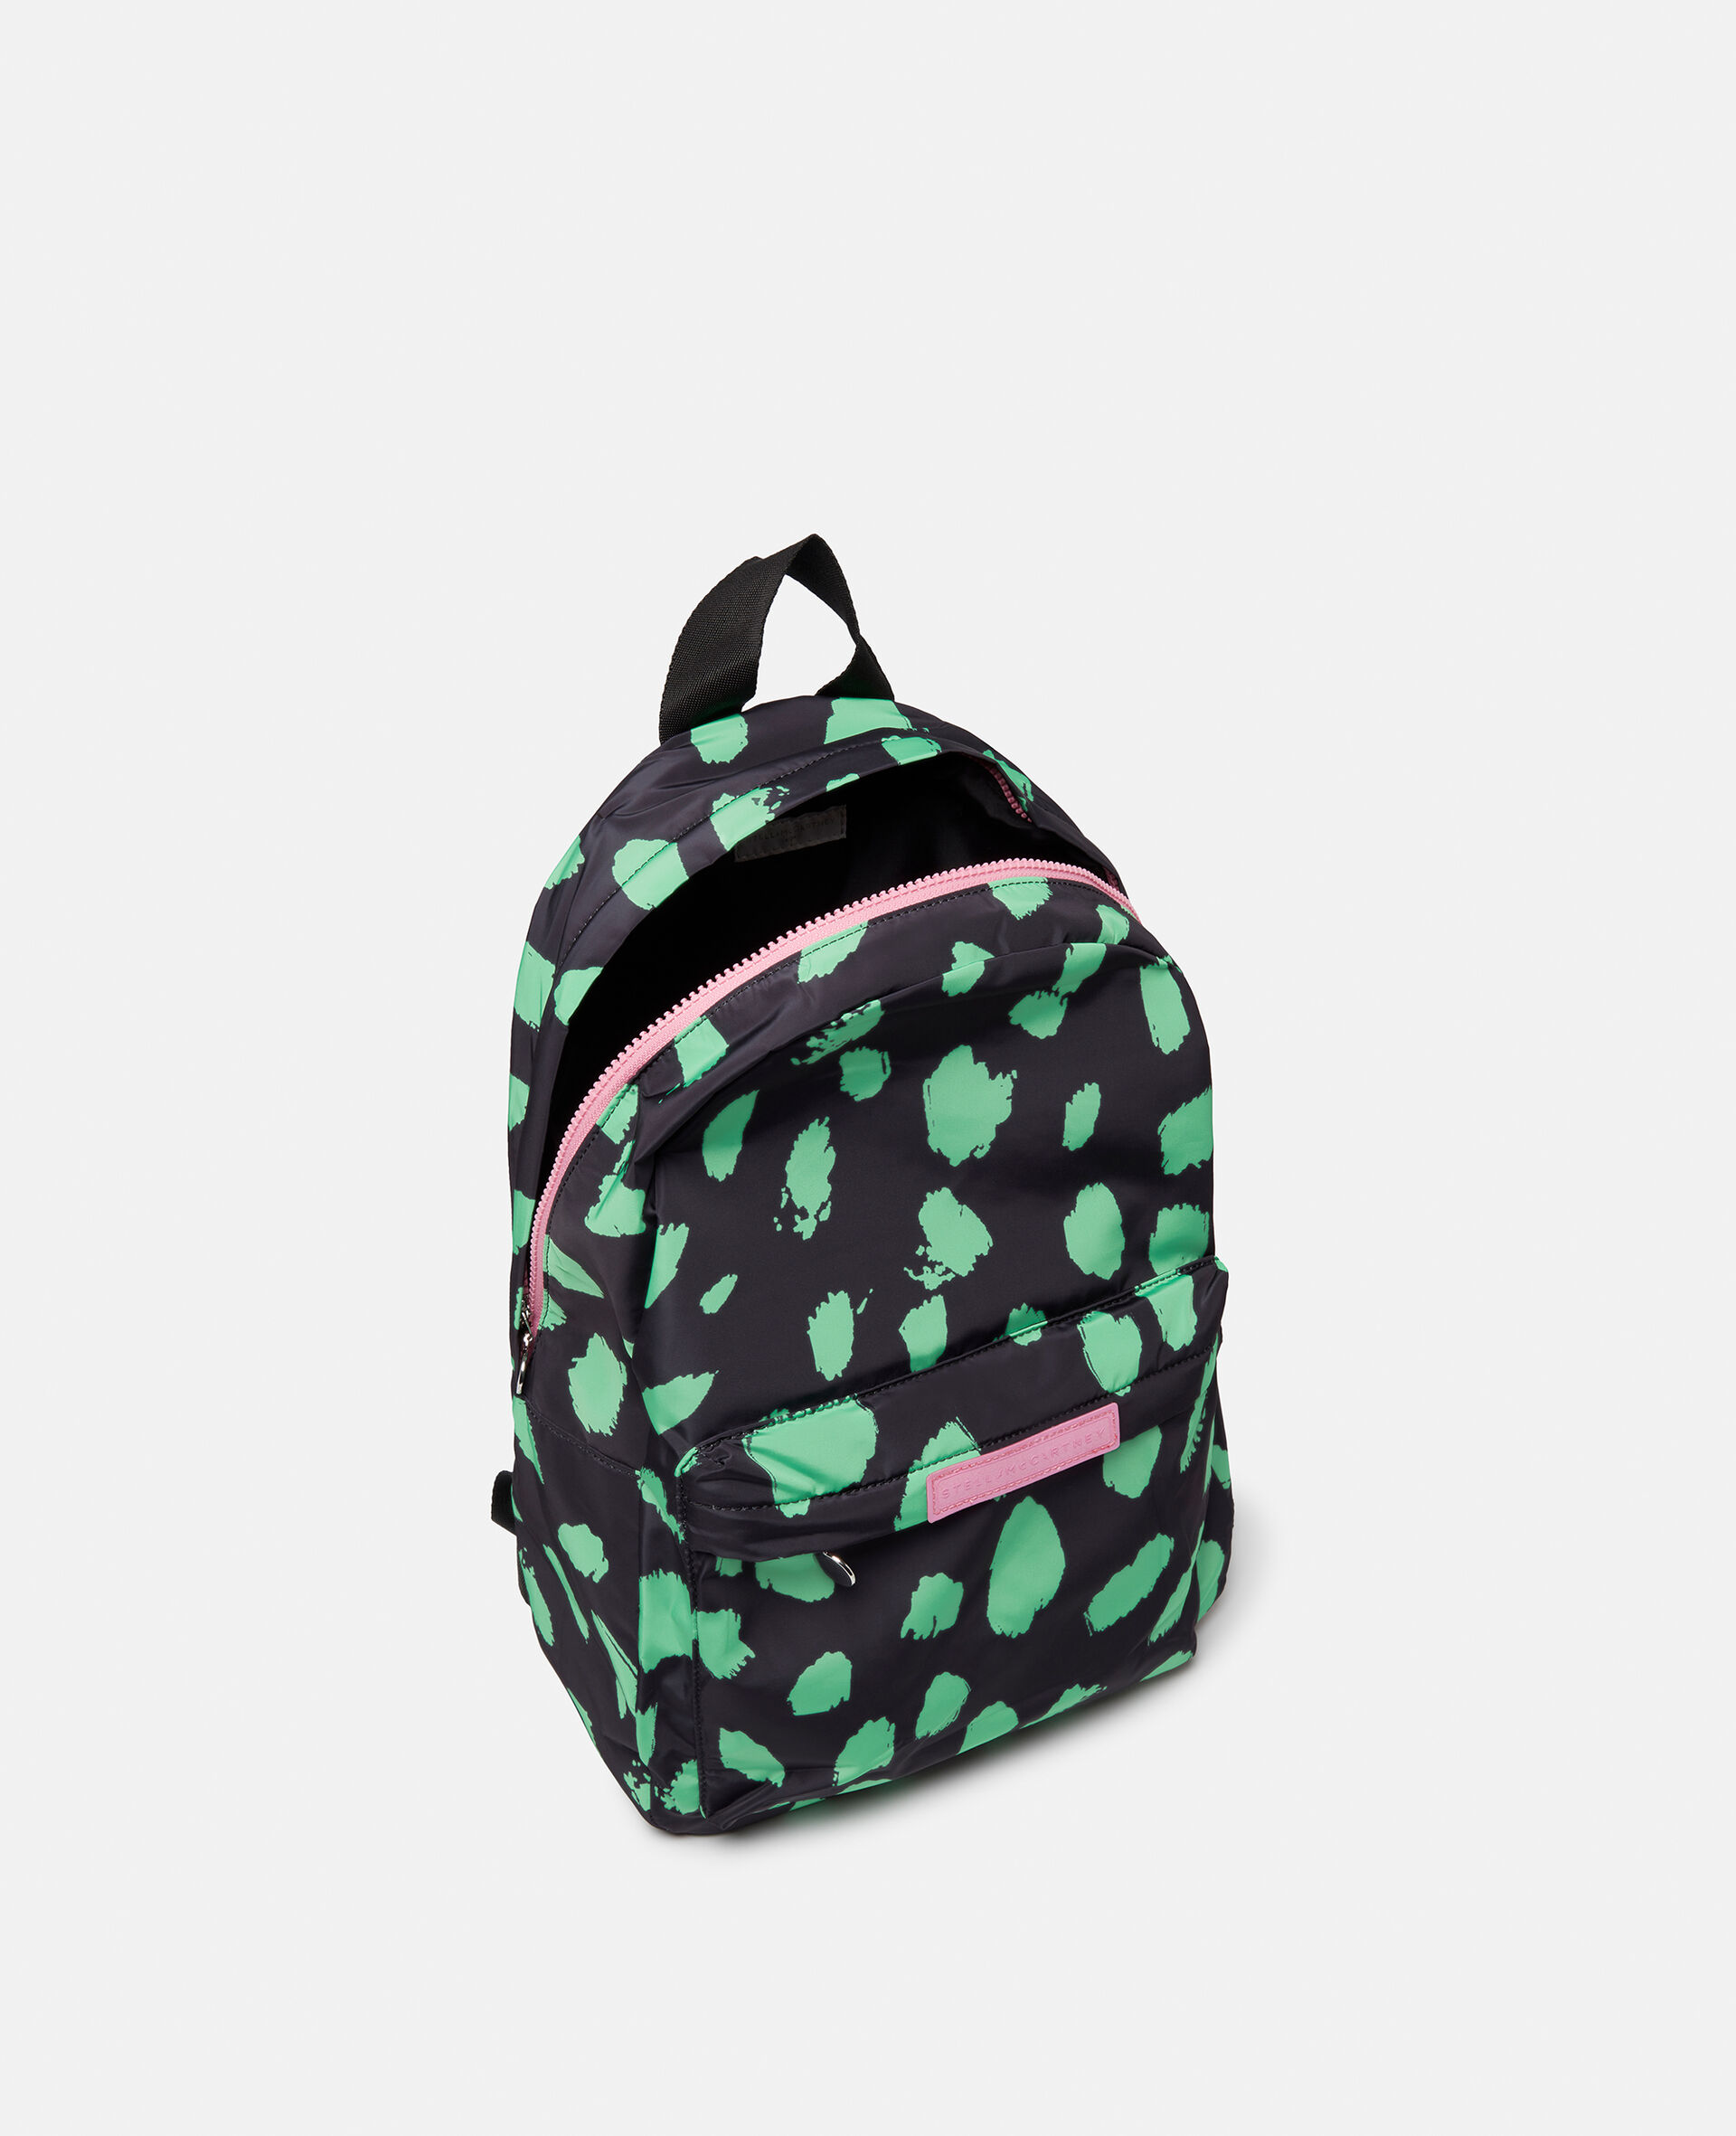 Camo Spot Print Backpack-Black-large image number 2